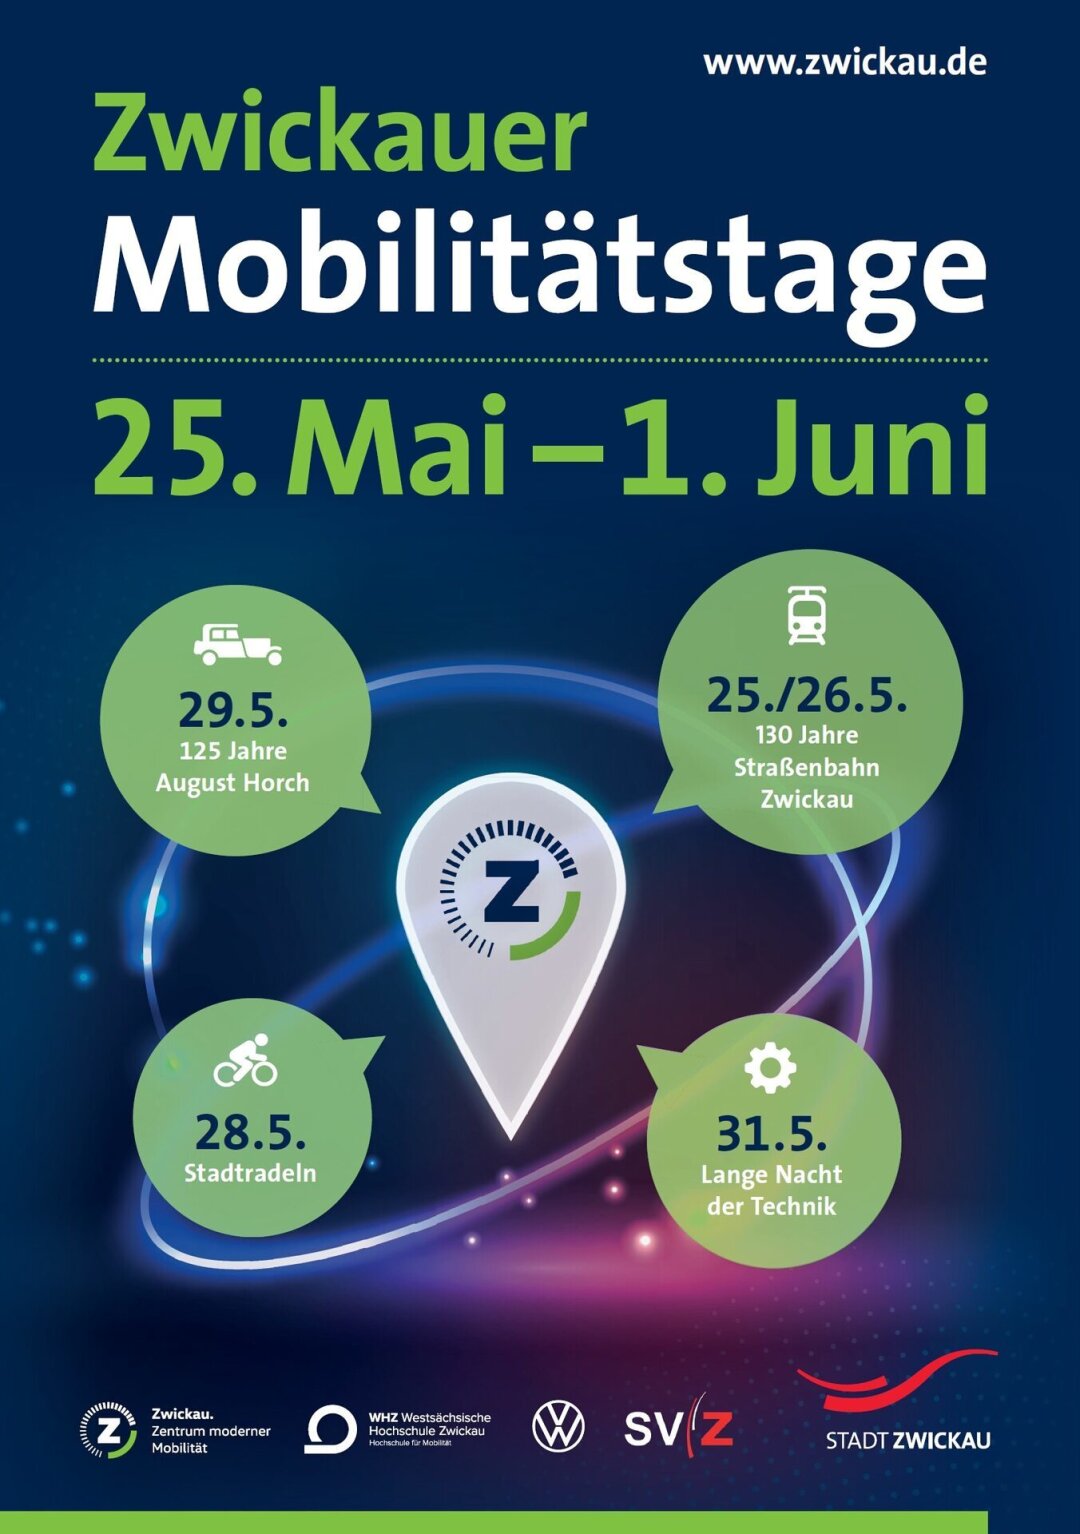 Mobilität in Zwickau: Geschichte, Gegenwart und Zukunft